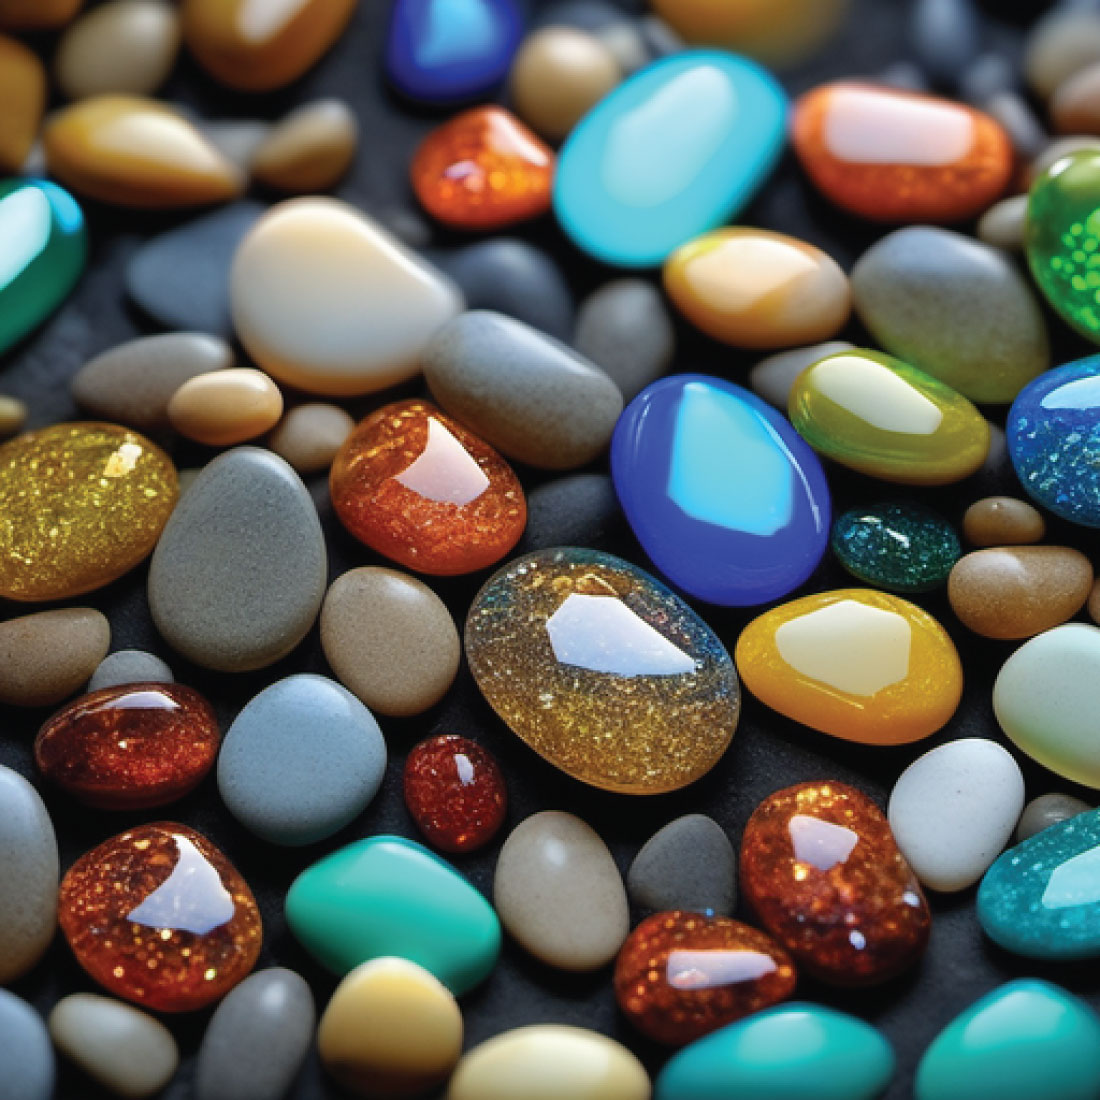 1100 x 1100 px shiny glittery pebble stones 4 728